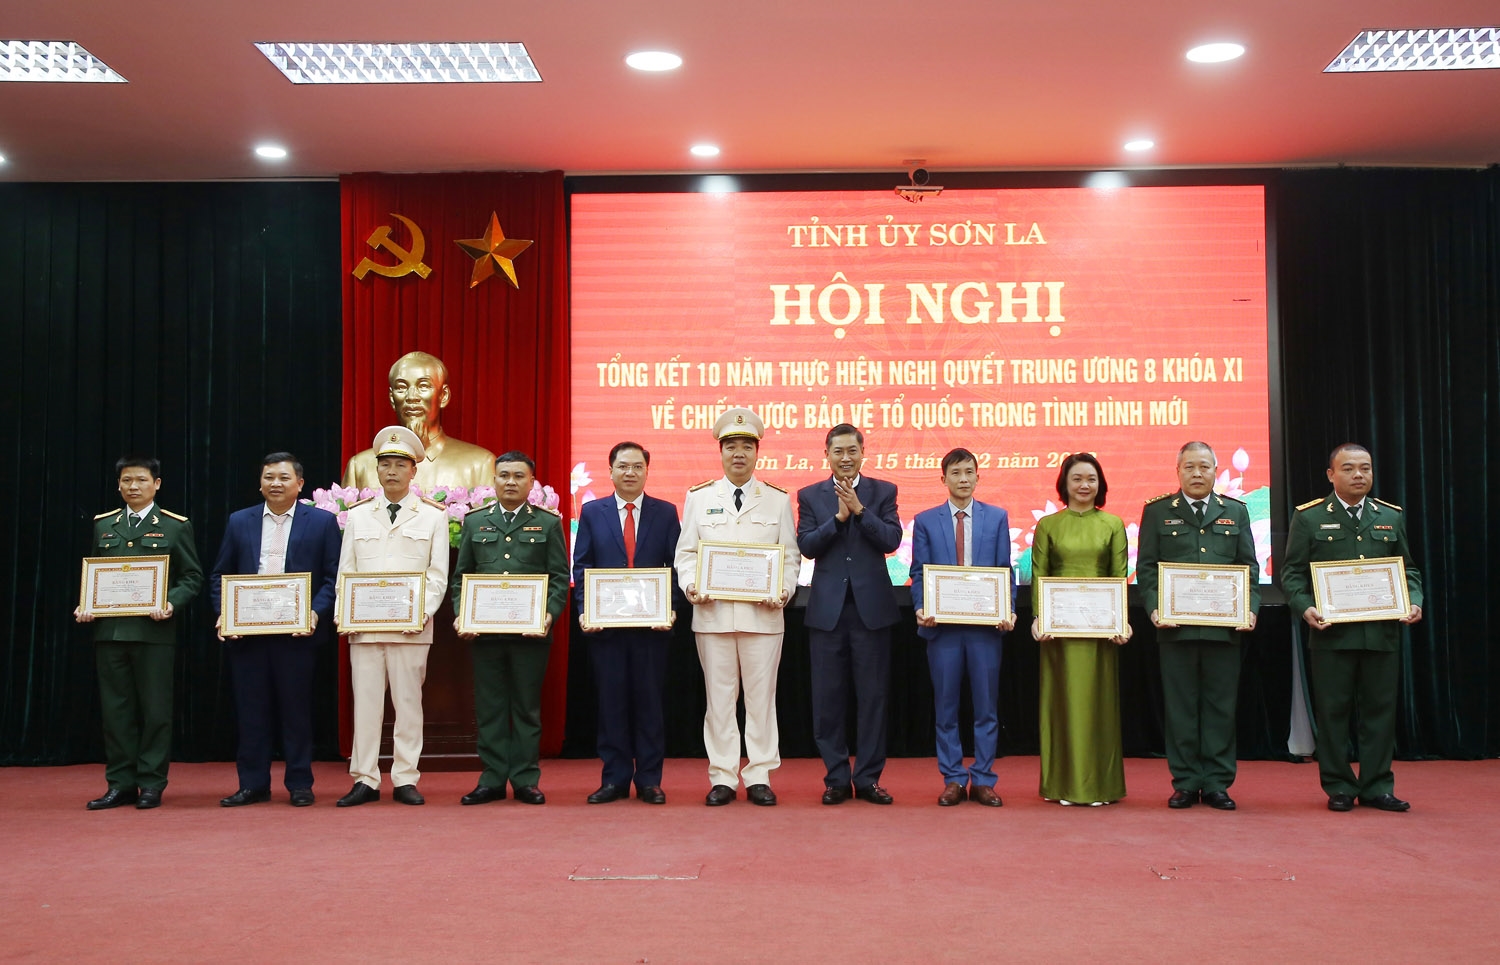 Bí thư Tỉnh ủy Sơn La Nguyễn Hữu Đông trao tặng Bằng khen cho các tổ chức, cá nhân có thành tích xuất sắc